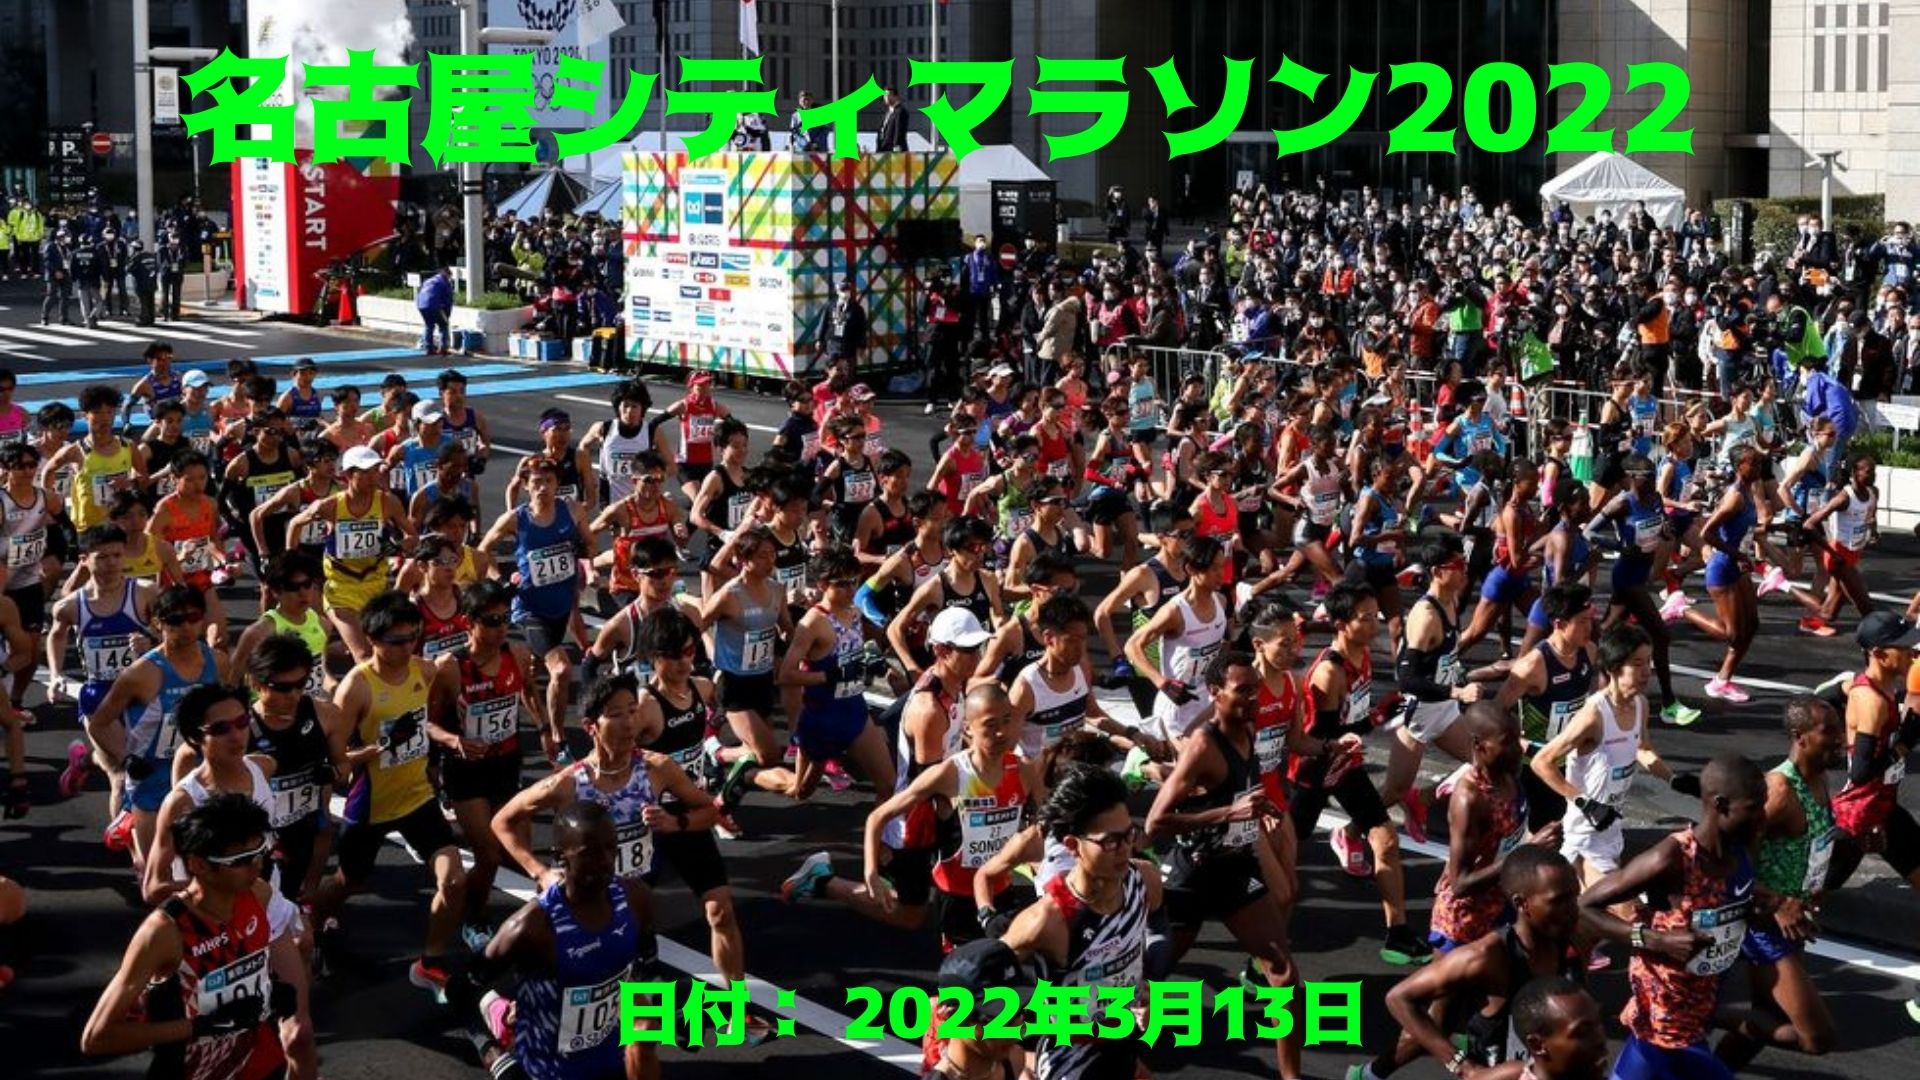 名古屋シティマラソン2022 参加者、日付、会場と生放送